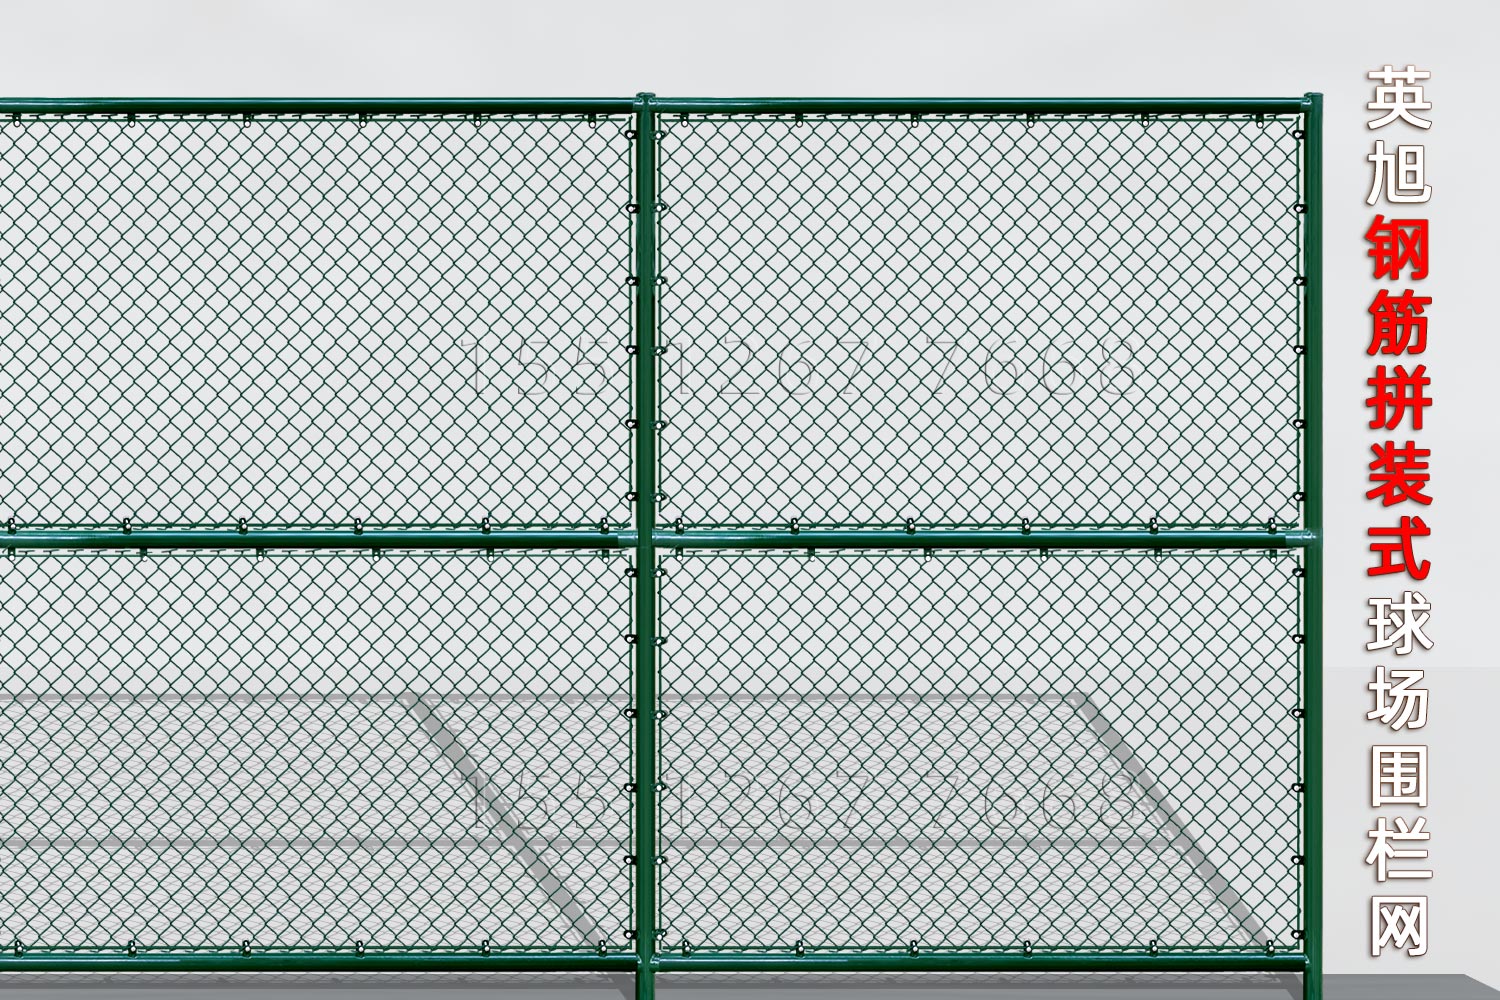 江苏钢筋组装式球场围栏网